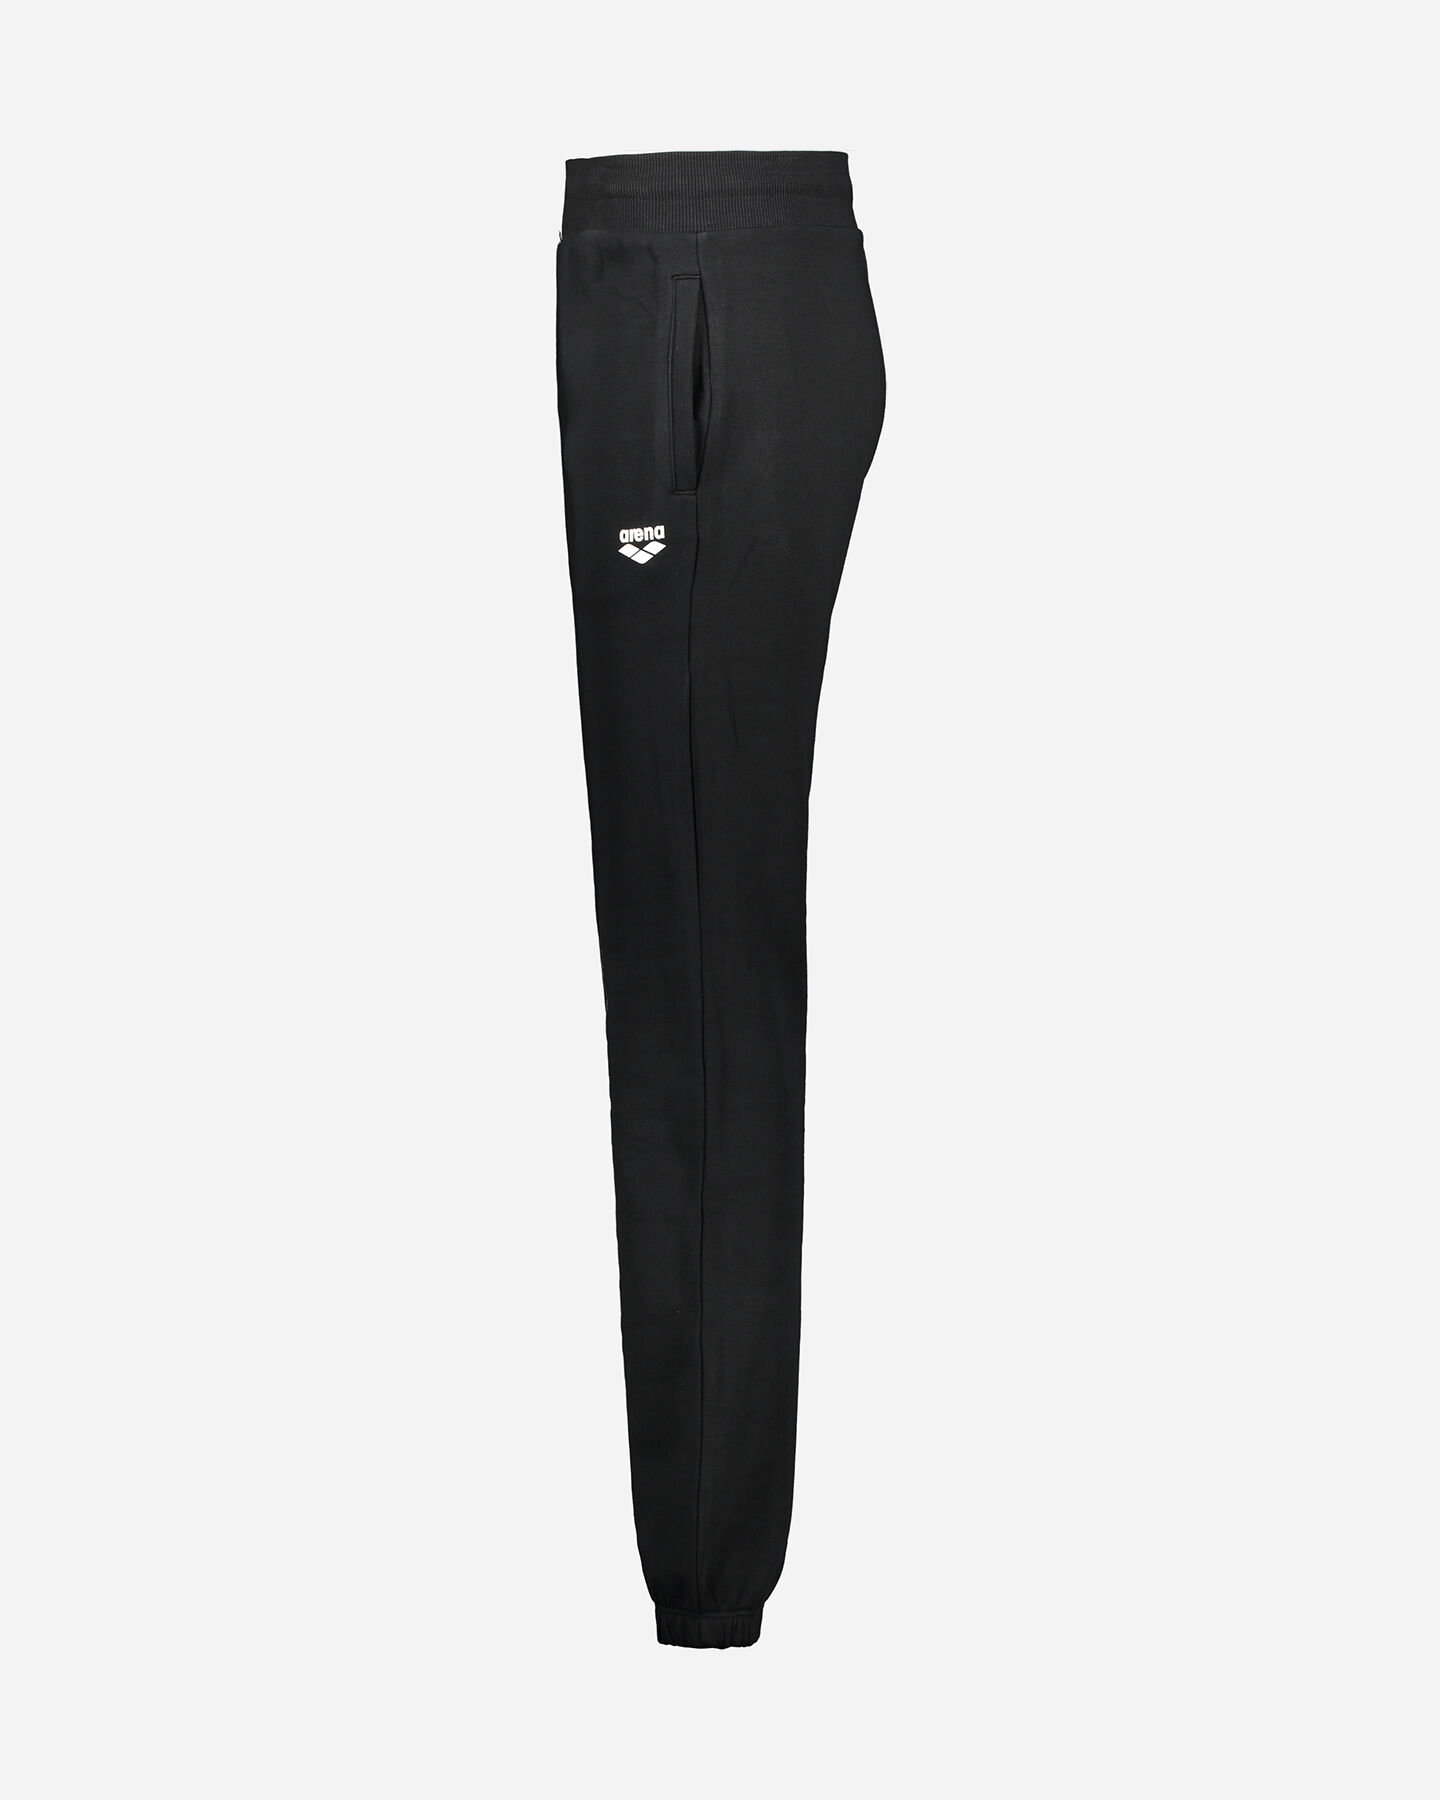  Pantalone ARENA CLASSIC W S4081070|050|S scatto 1